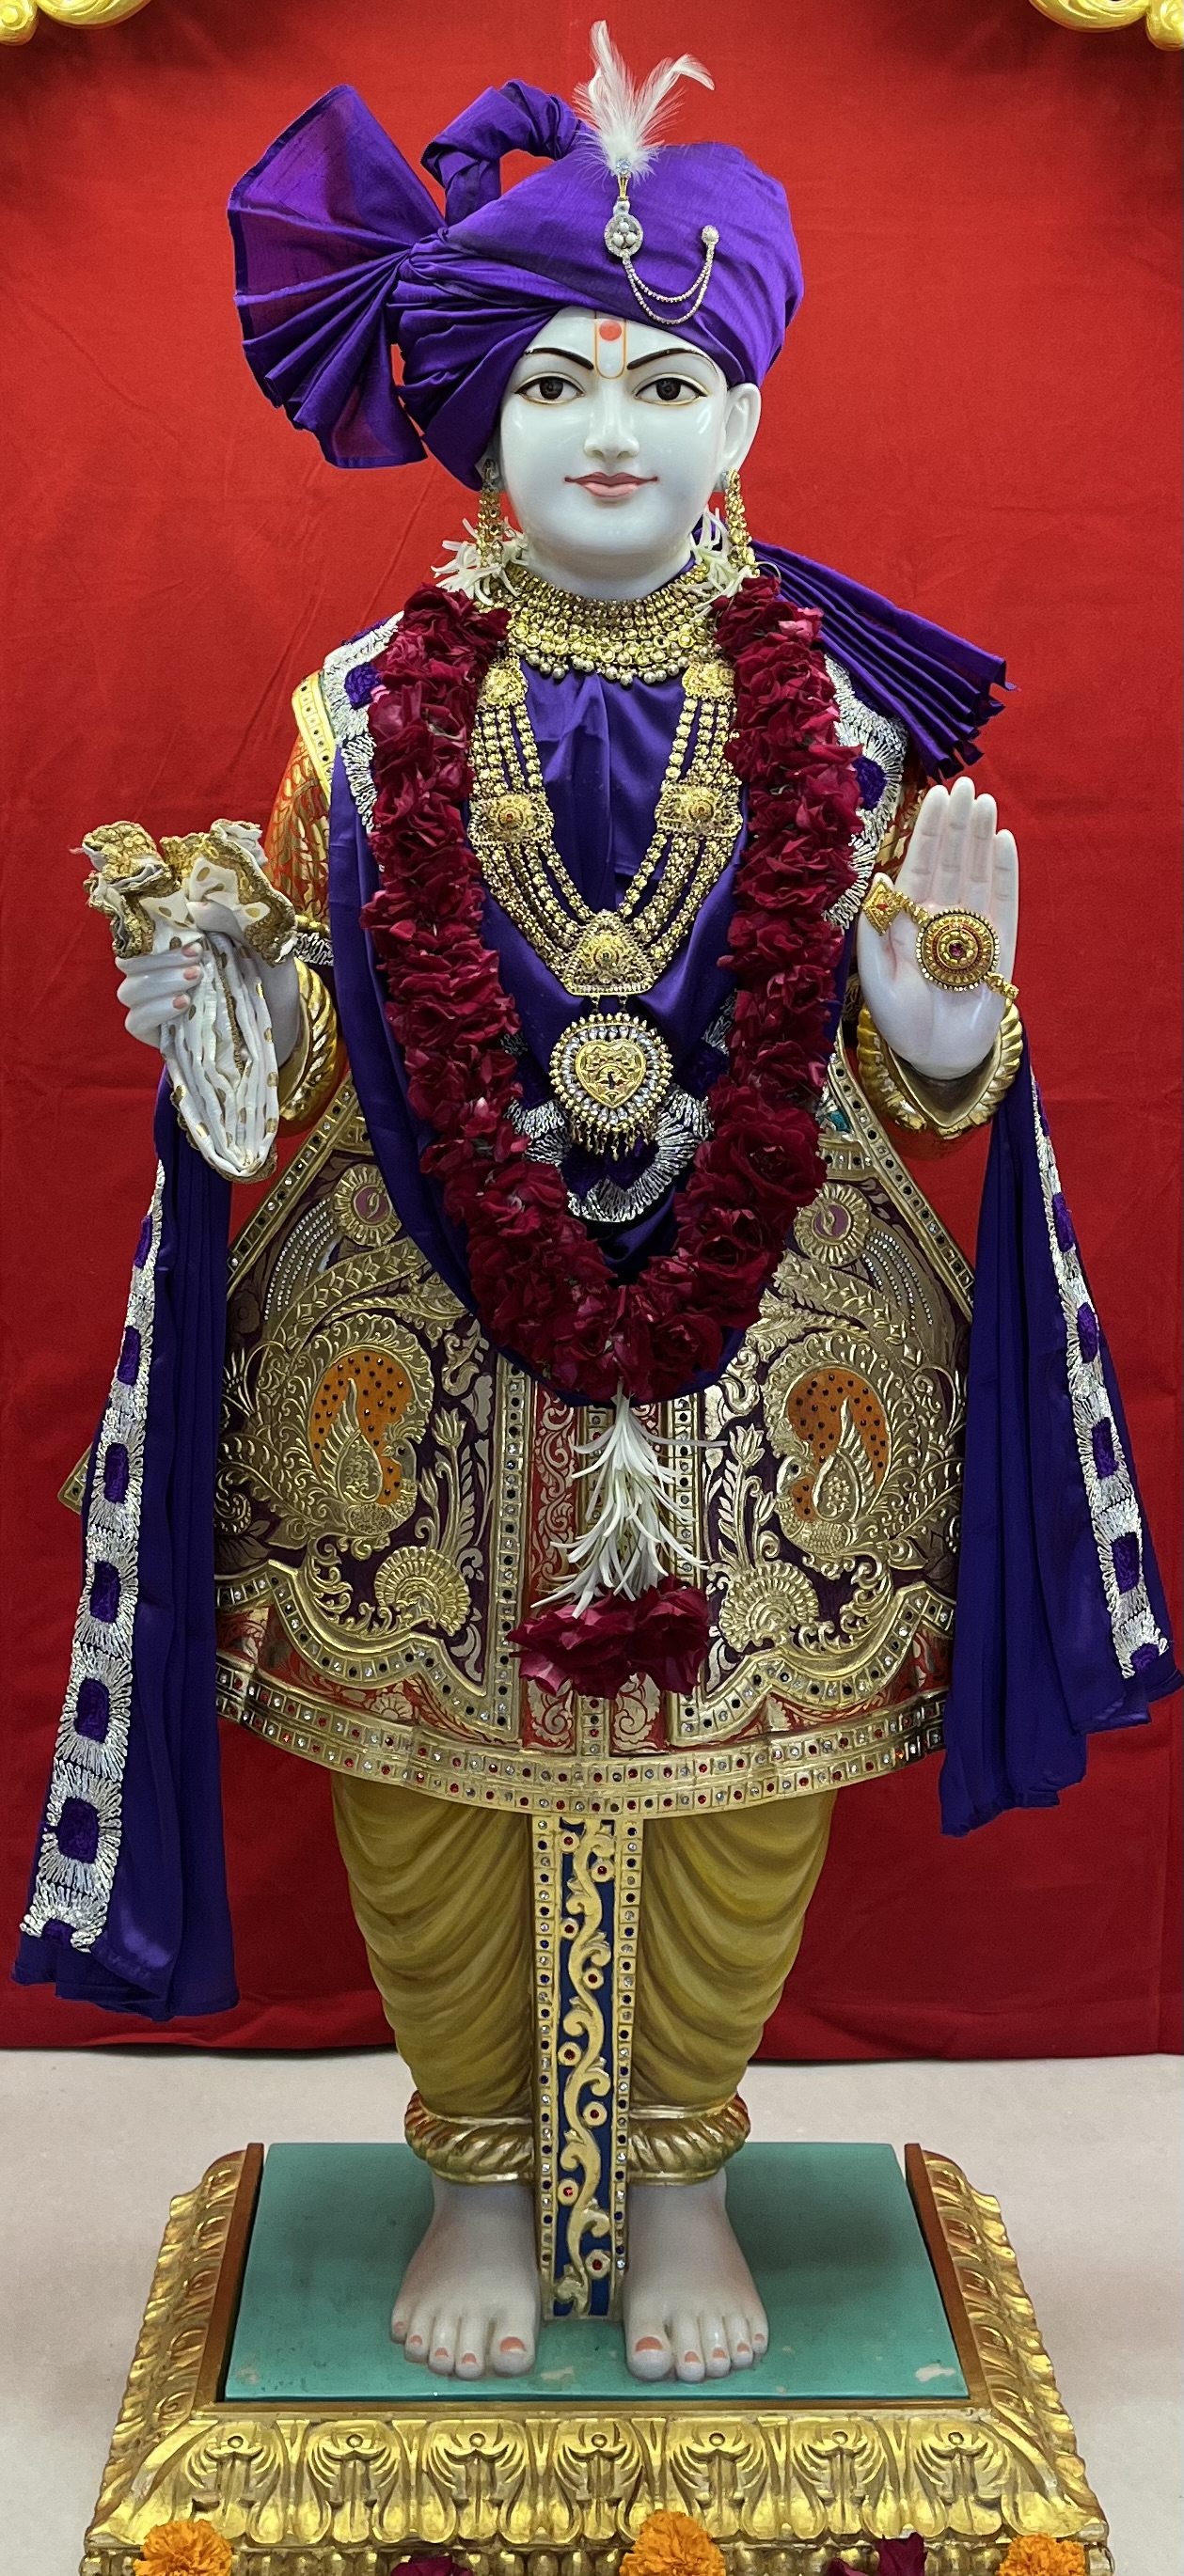 SMVS Swaminarayan Mandir - Vijapur